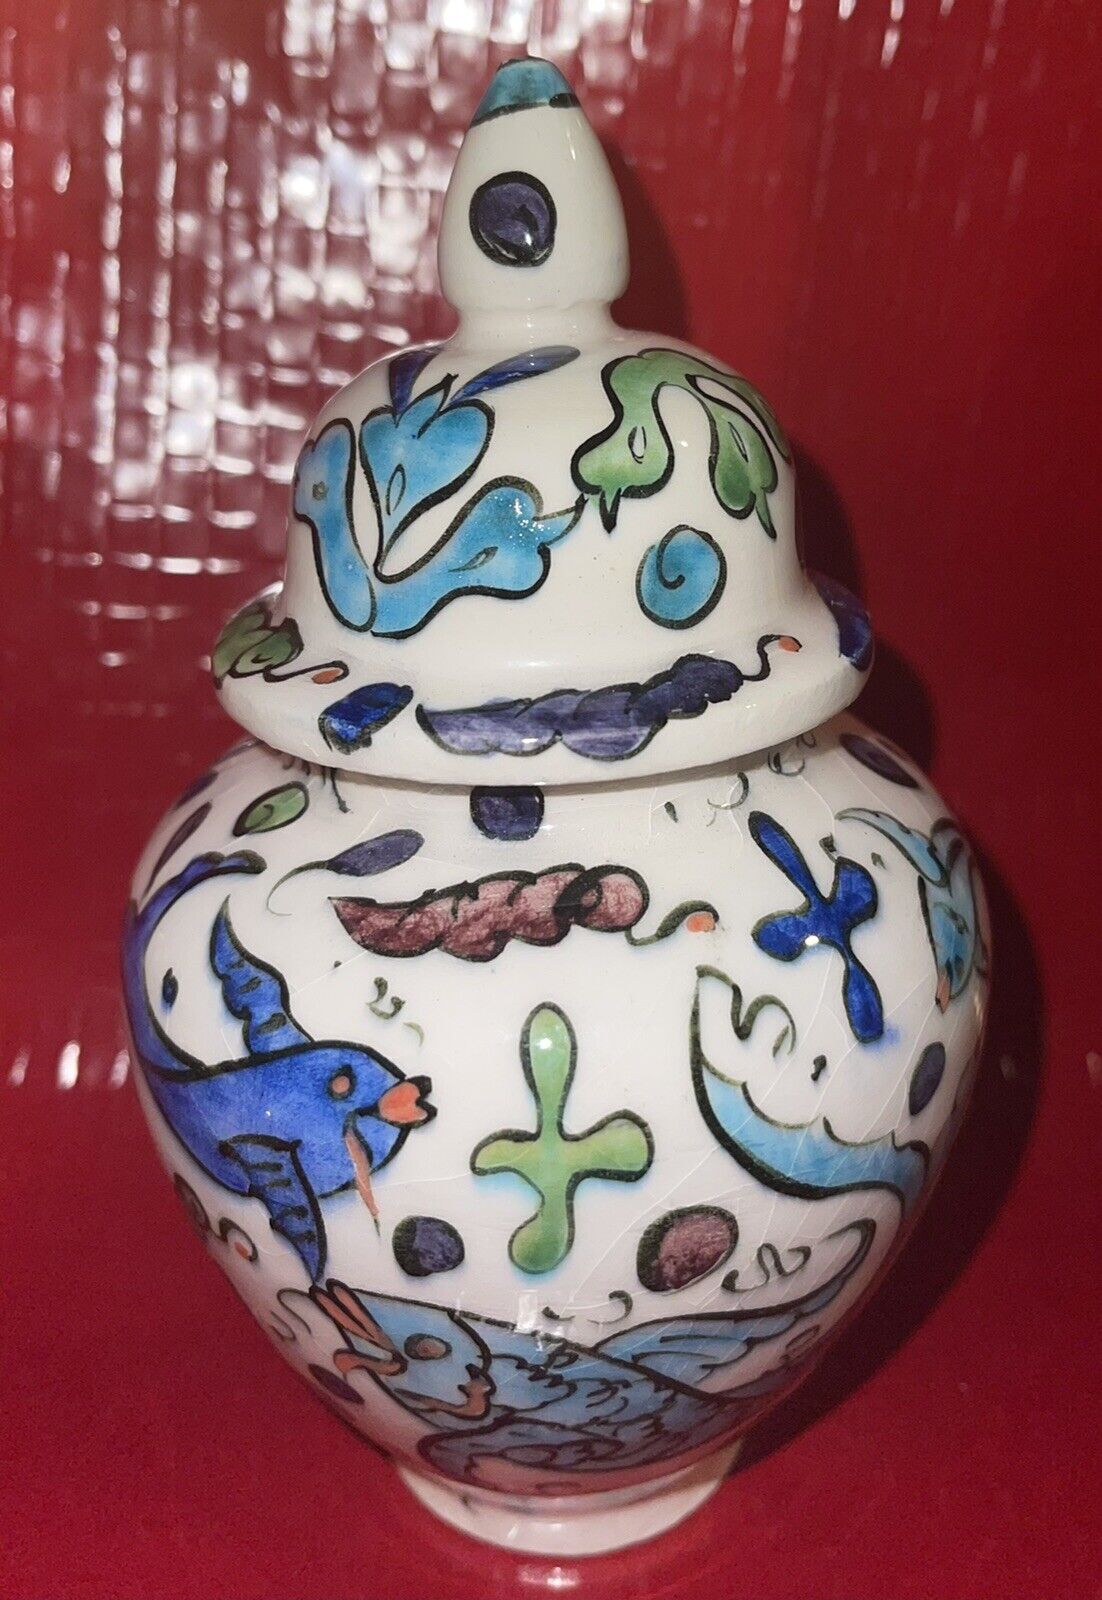 Vintage Lidded Ginger jar vase fish design signed By Artist Colorful Lovely